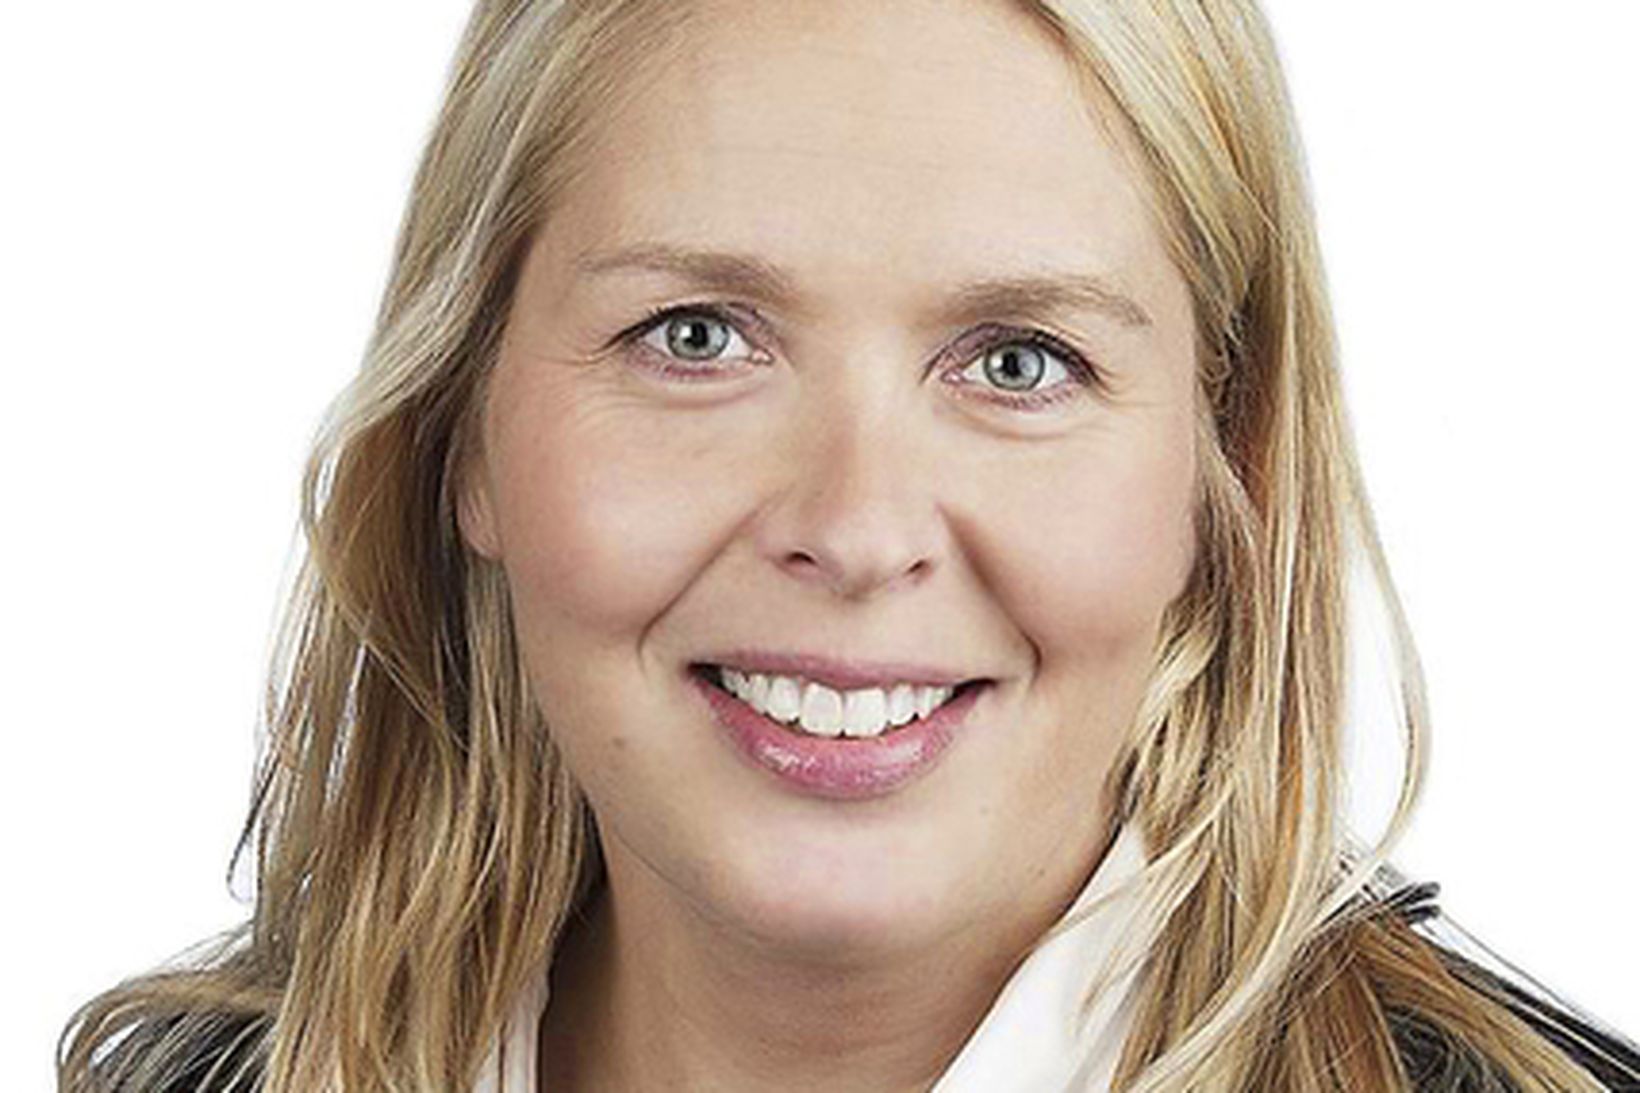 Sveinbjörg Birna Sveinbjörnsdóttir, borgarfulltrúi Framsóknar og flugvallarvina.